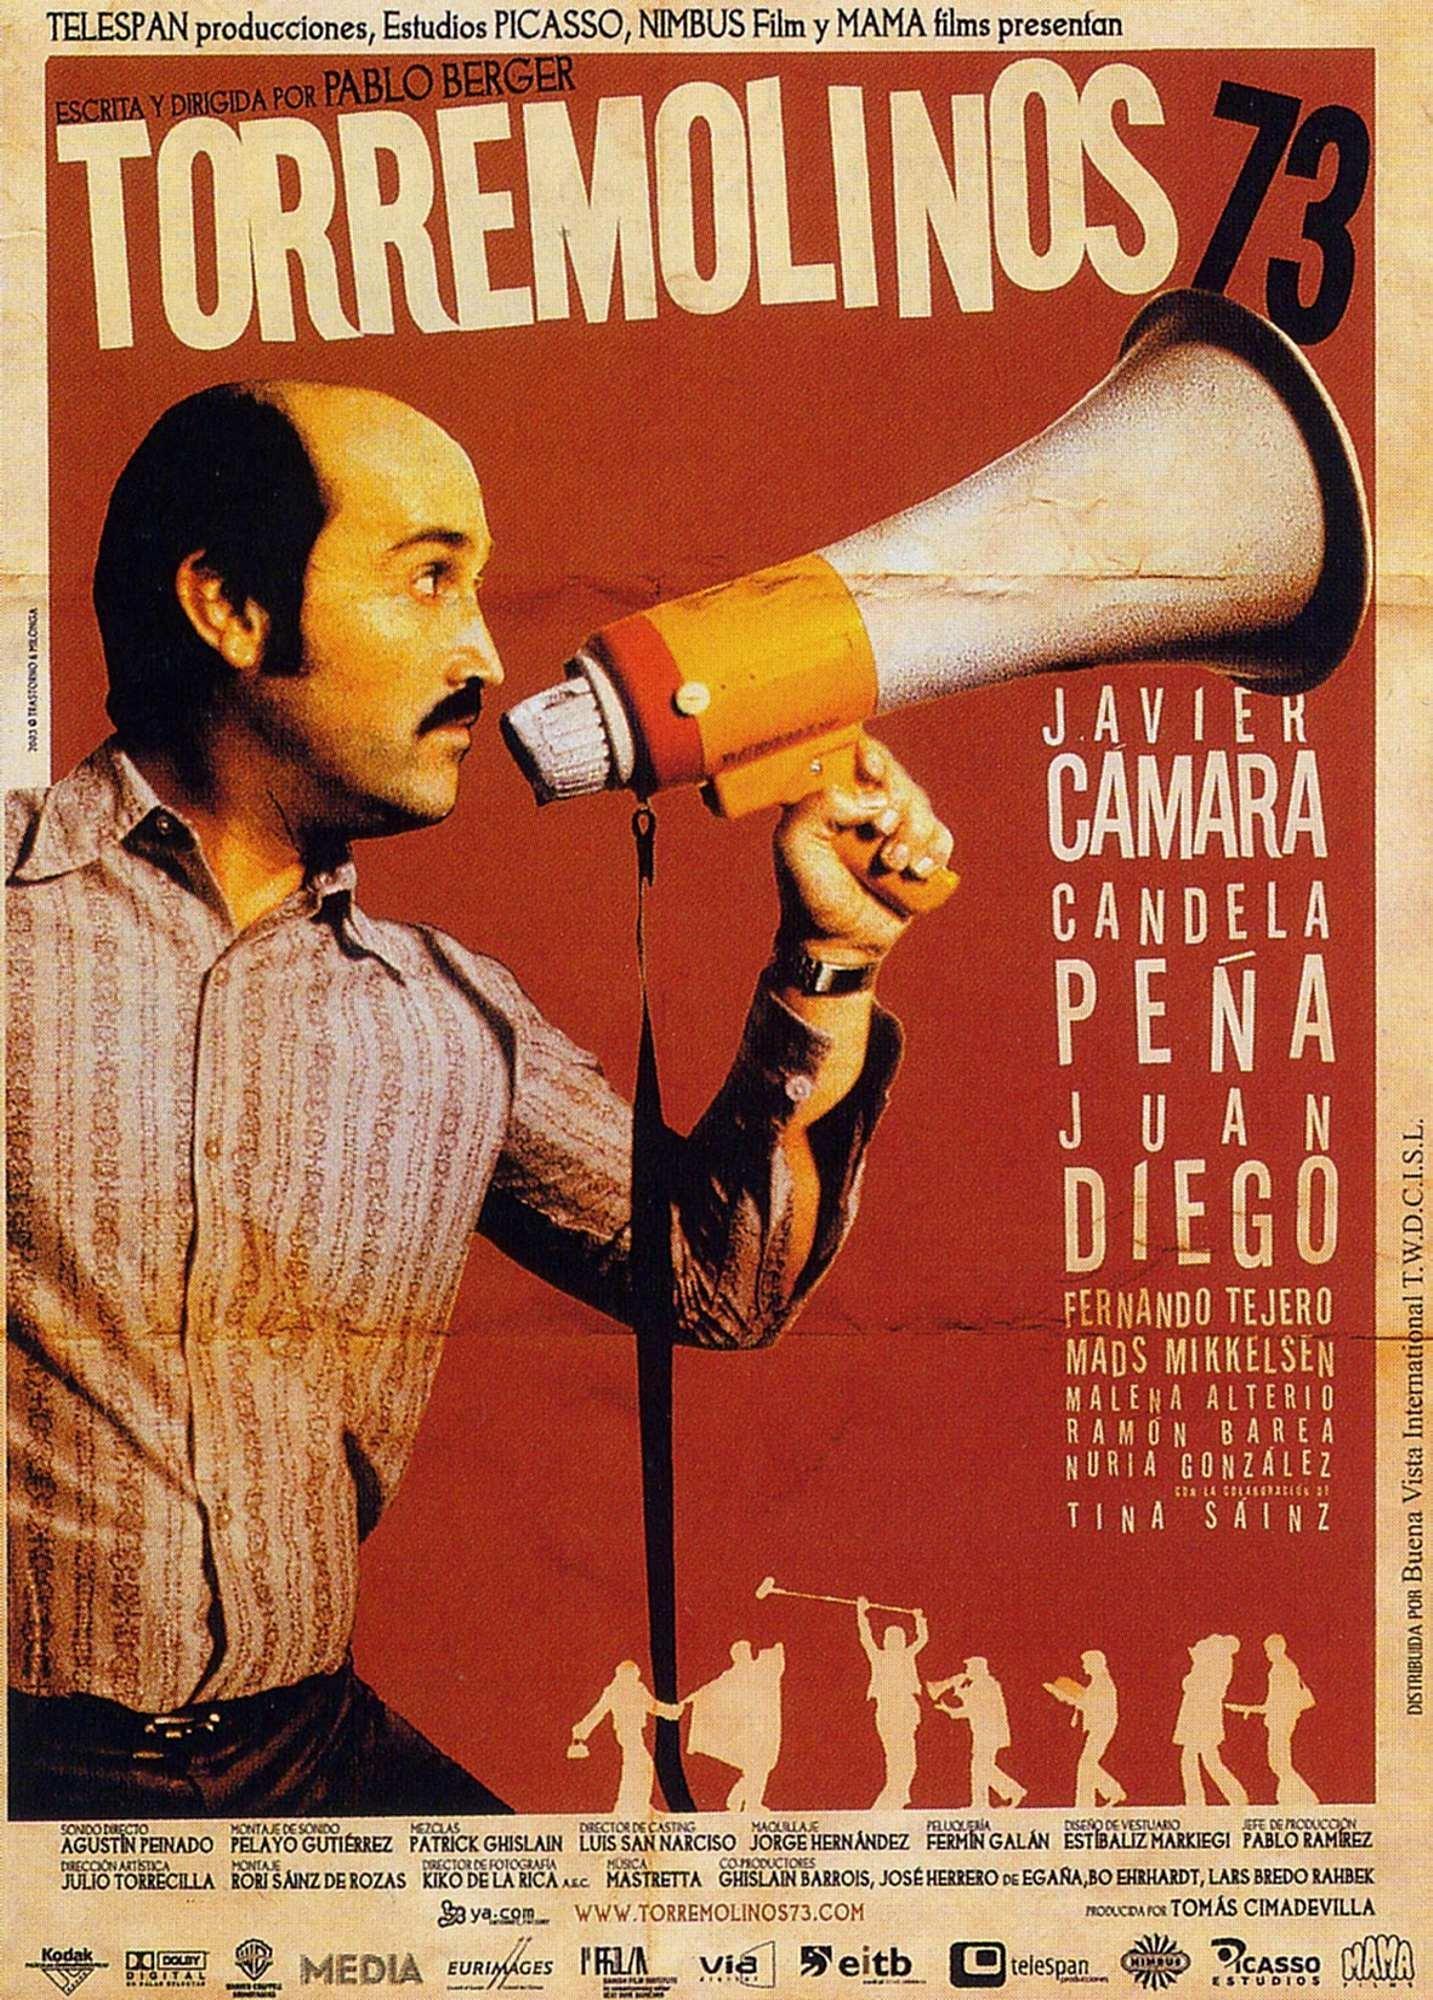 Постер фильма Торремолинос 73 | Torremolinos 73